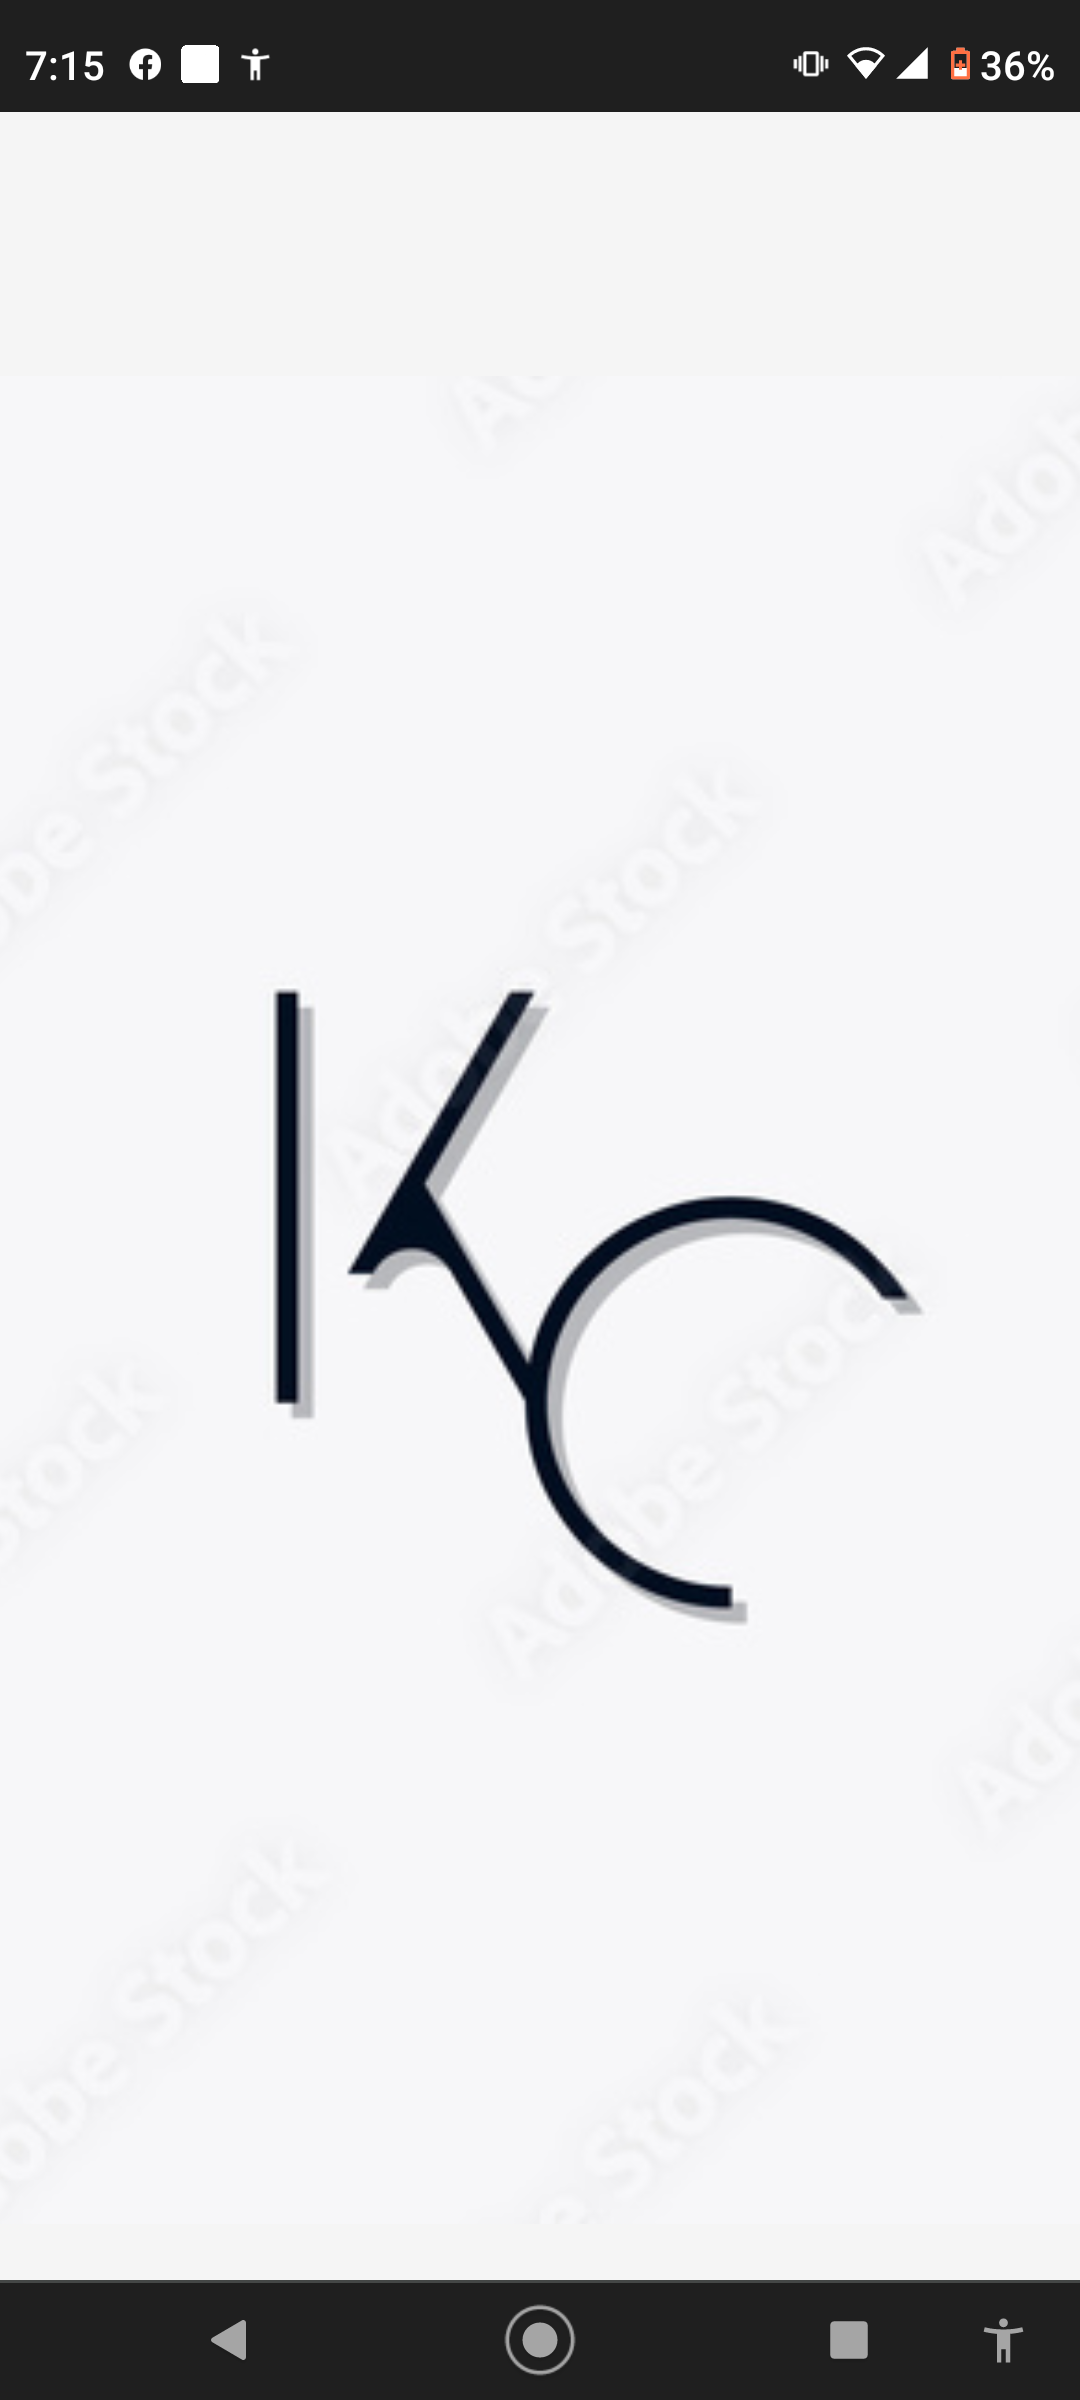 Kcs repairs and more logo